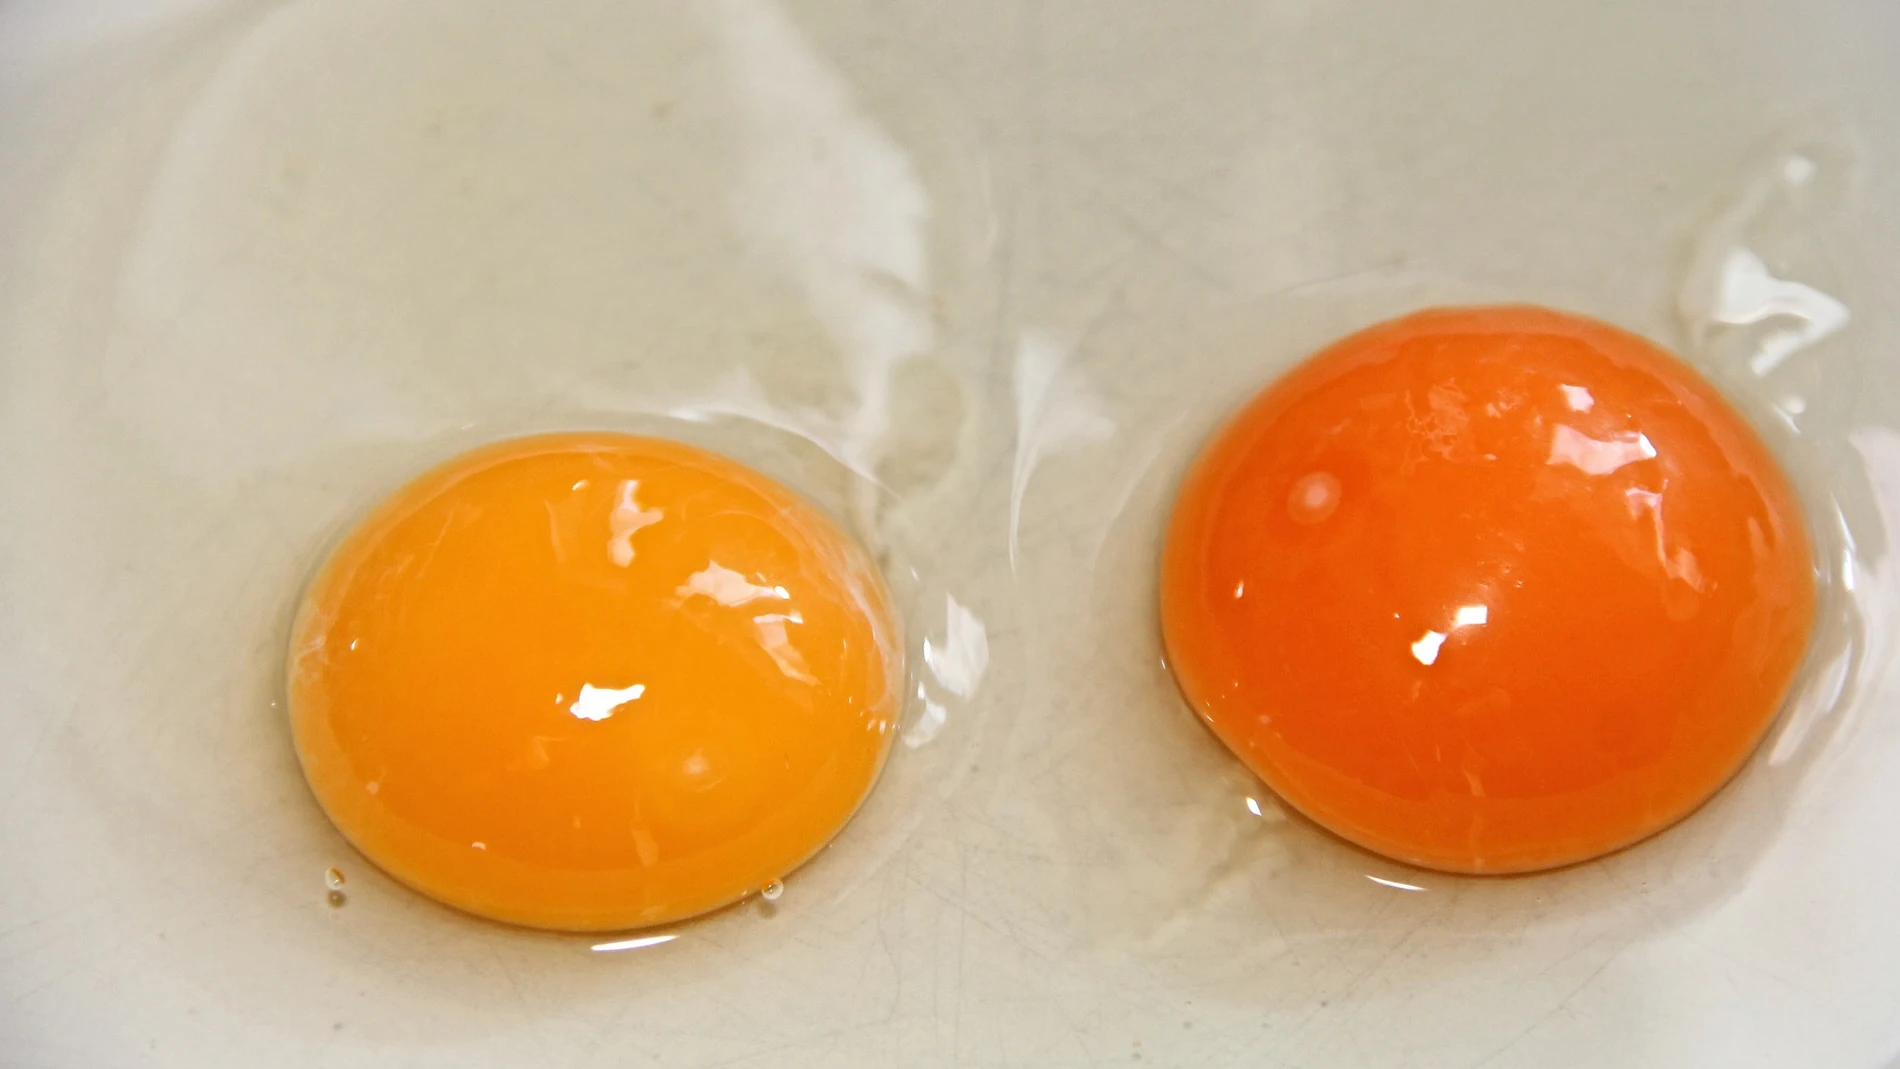 No son proyectos de pollito: qué son en realidad las machas rojas que hay a veces en los huevos